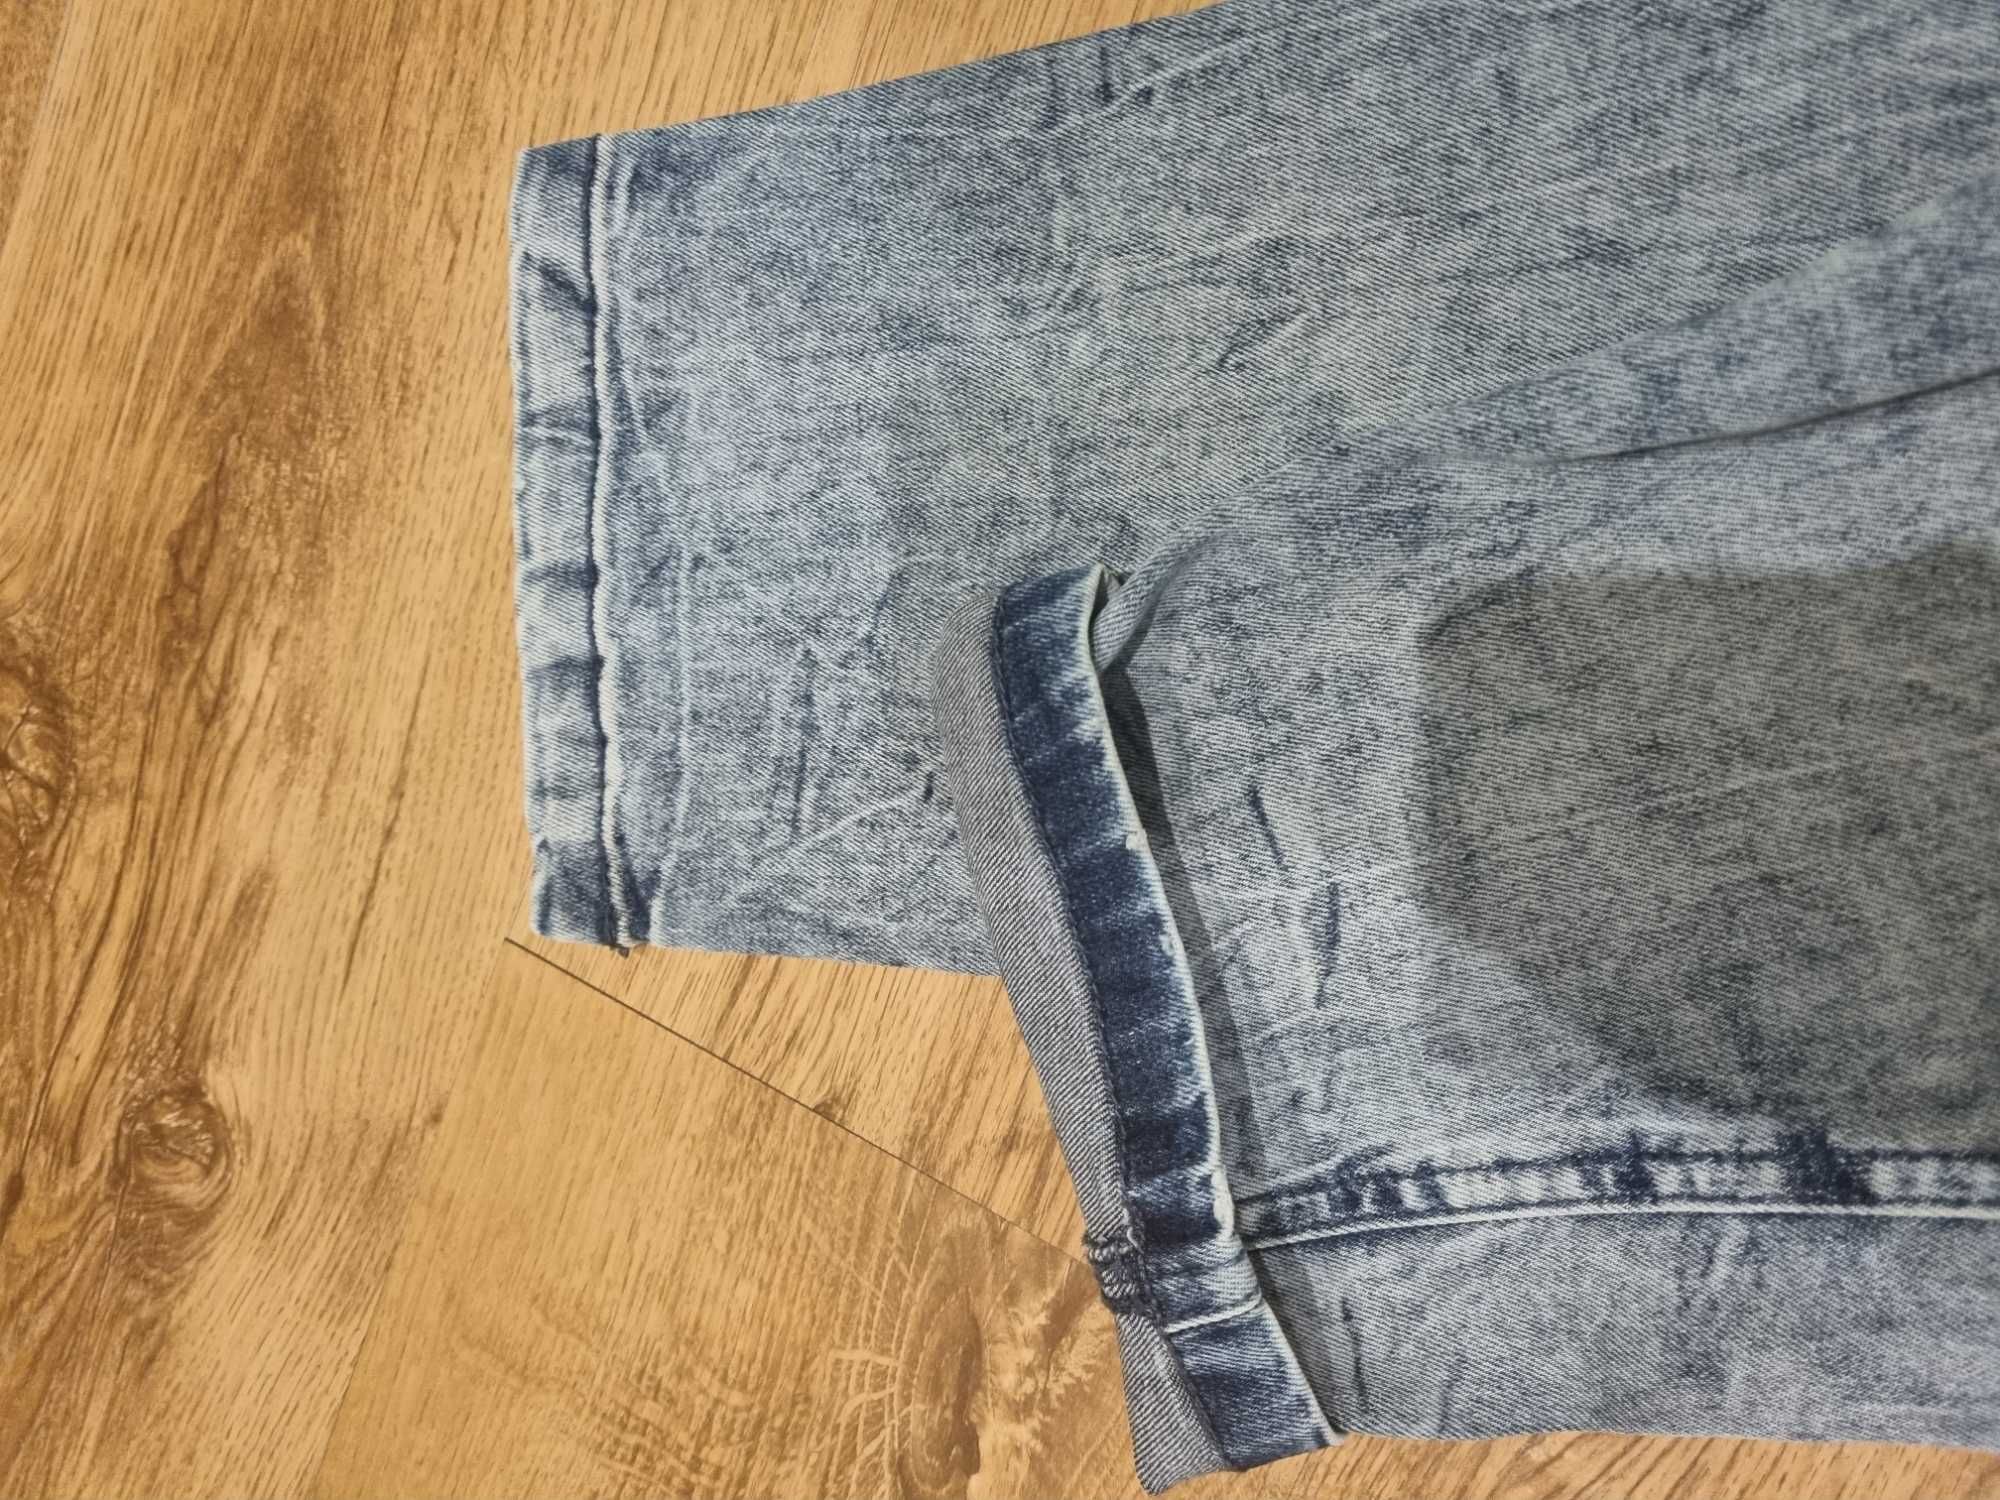 Spodnie jeansowe młodzieżowe/męskie RESERVED, r. 30